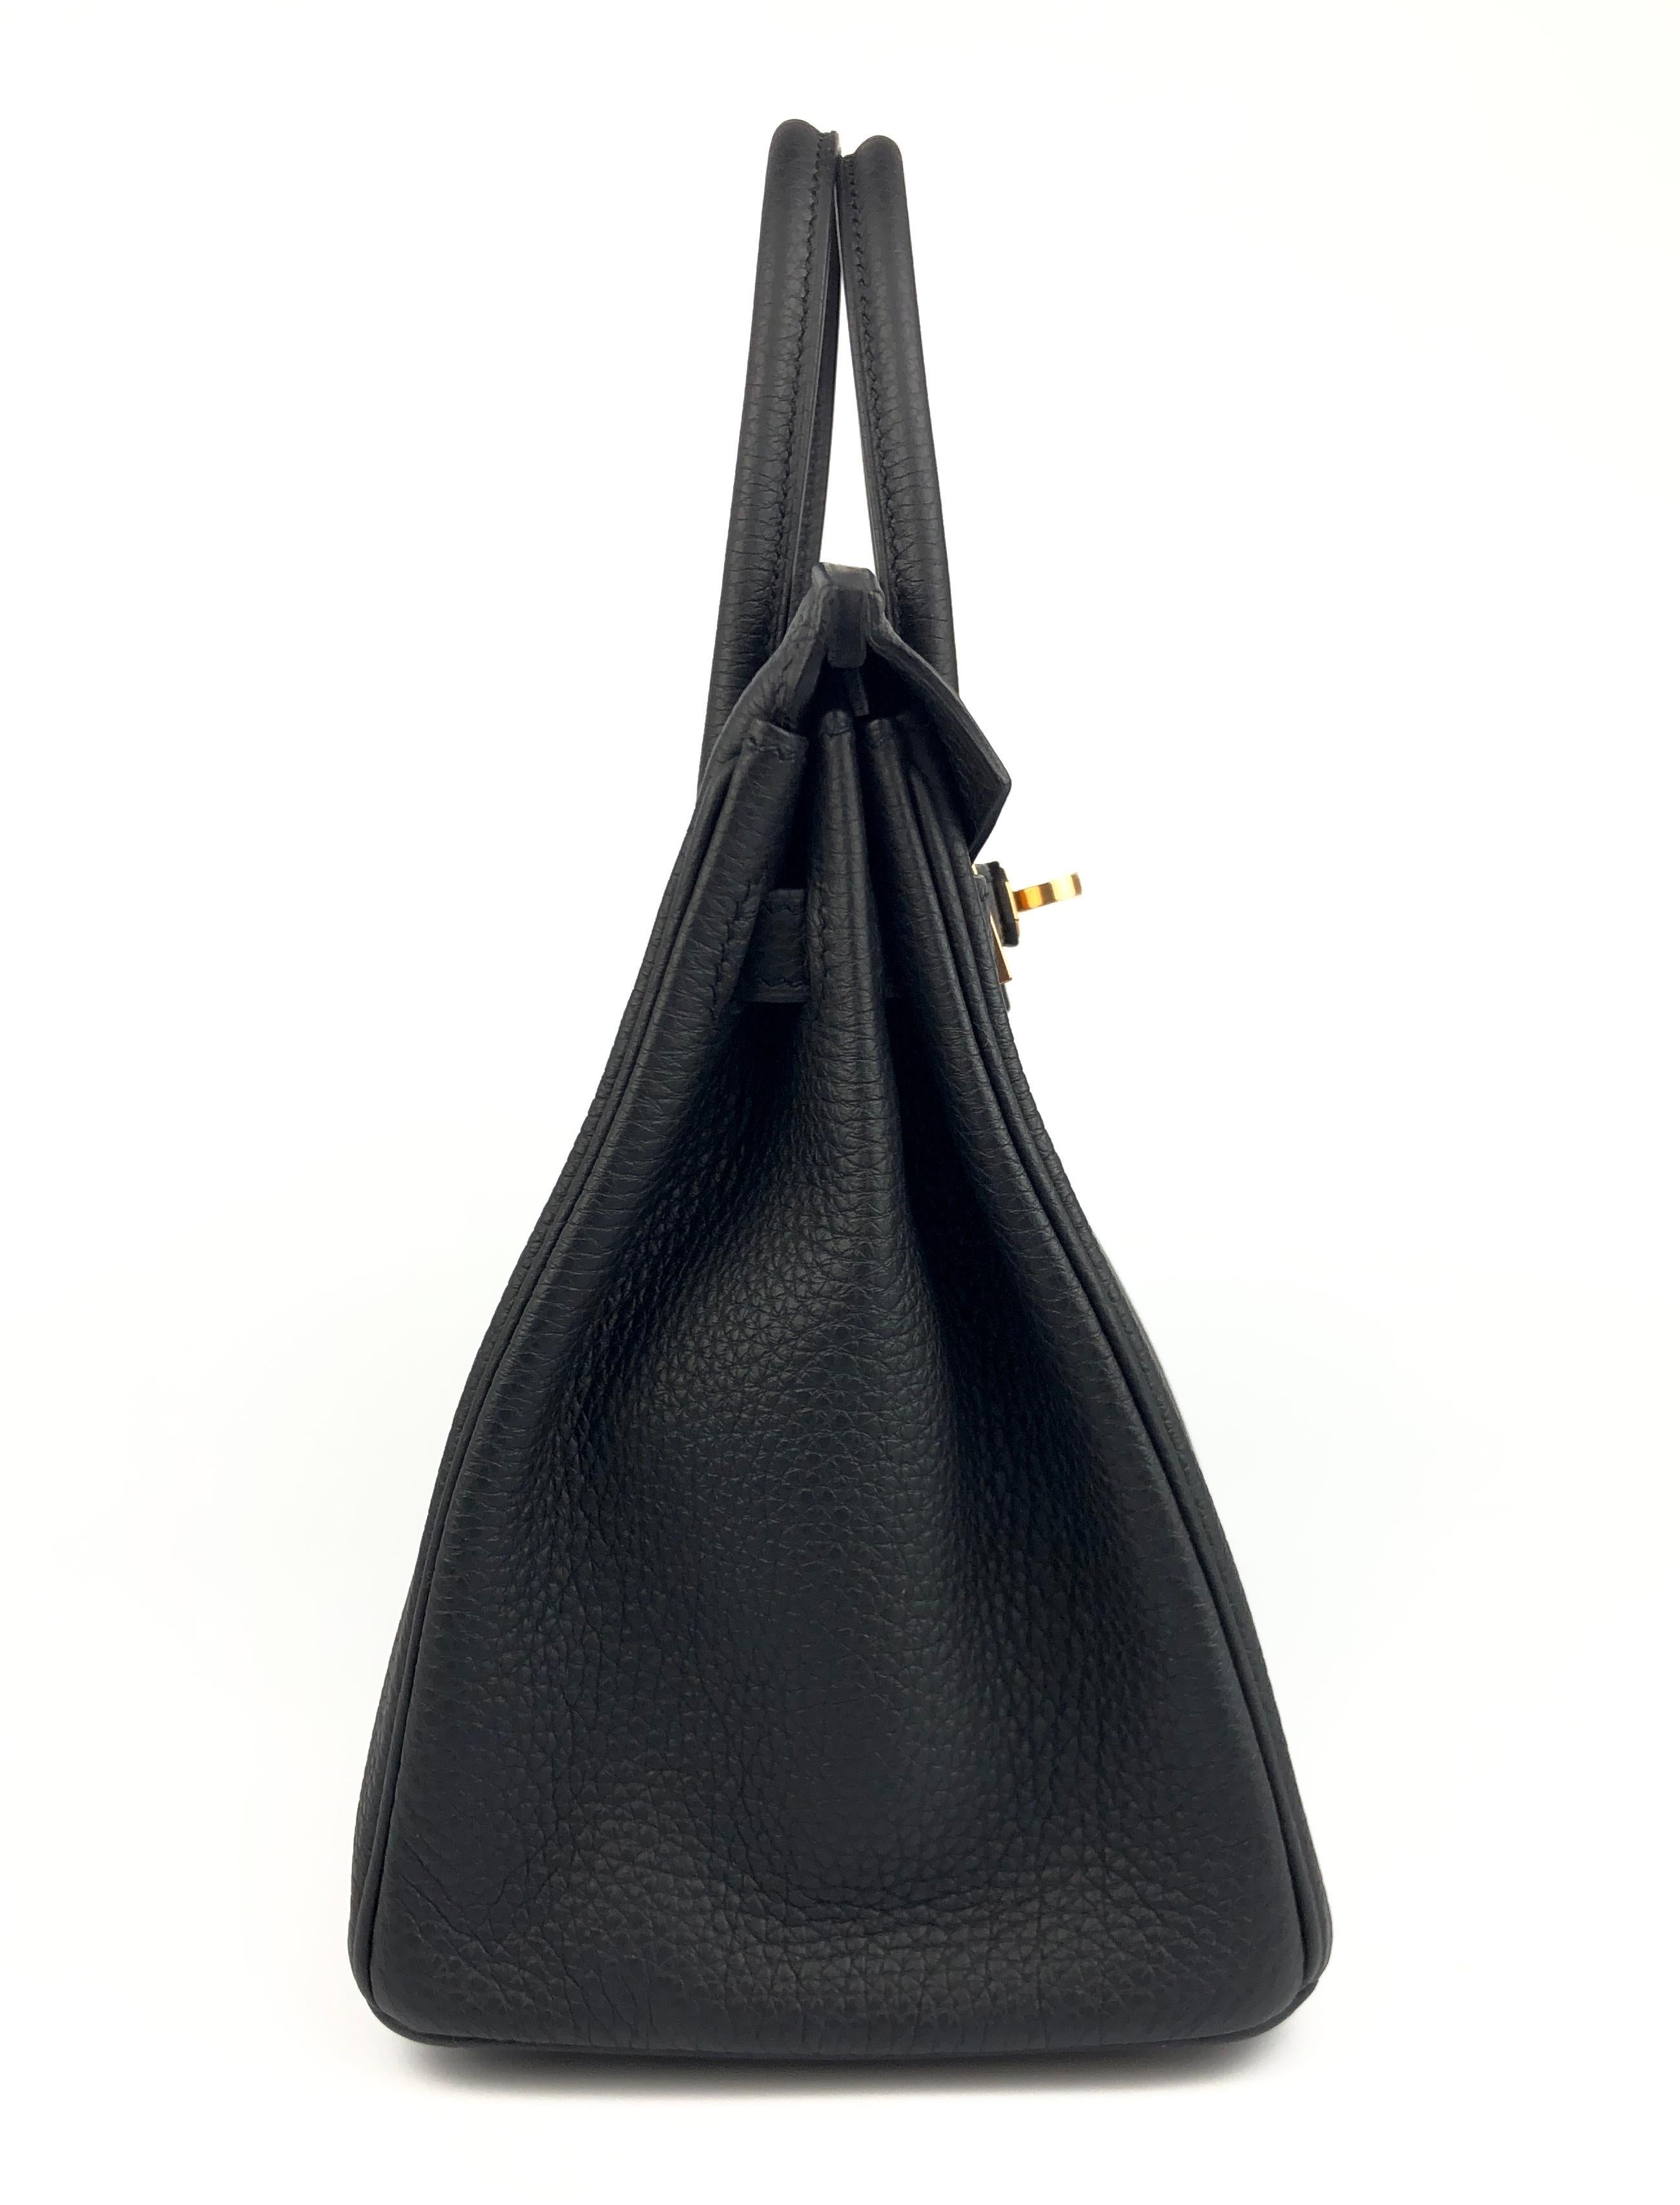 Hermes Birkin 25 Black Noir Togo Leather Handbag Rose Gold Hardware  2